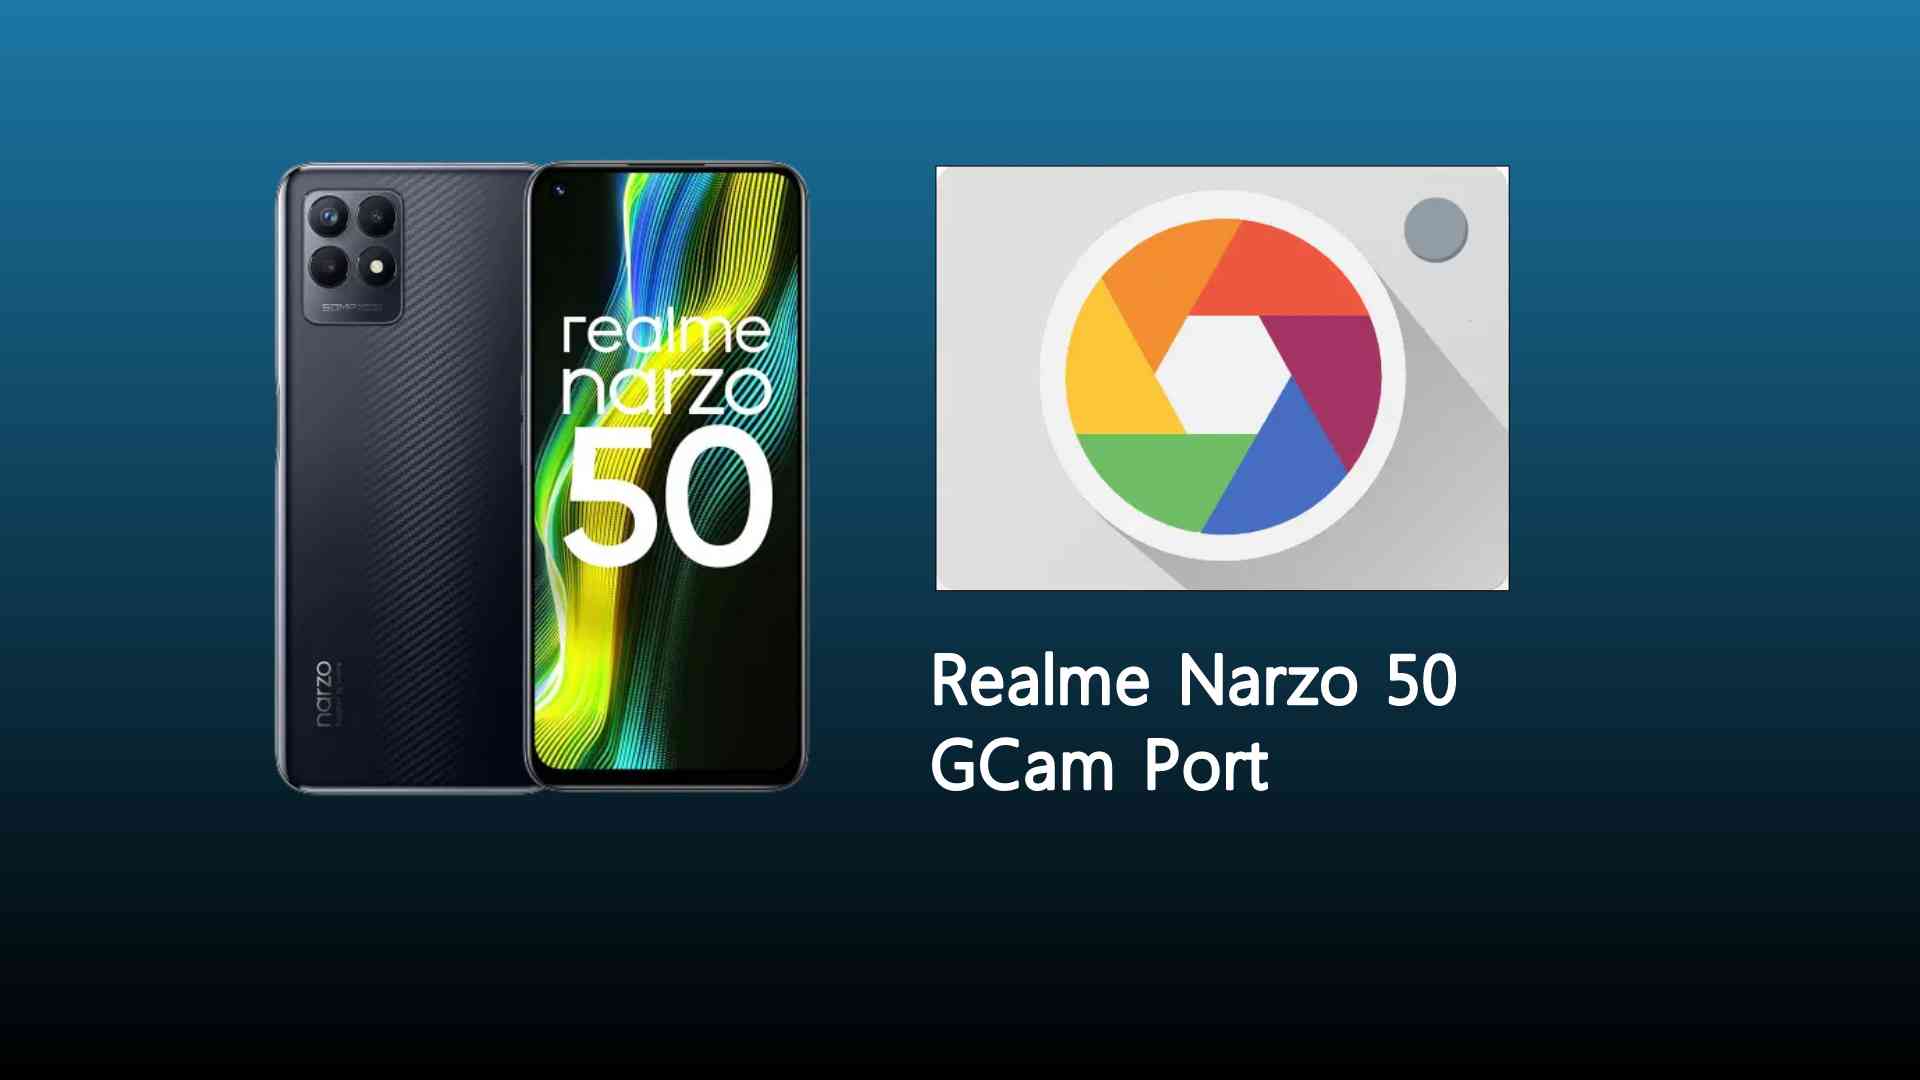 Realme Narzo 50 GCam Port